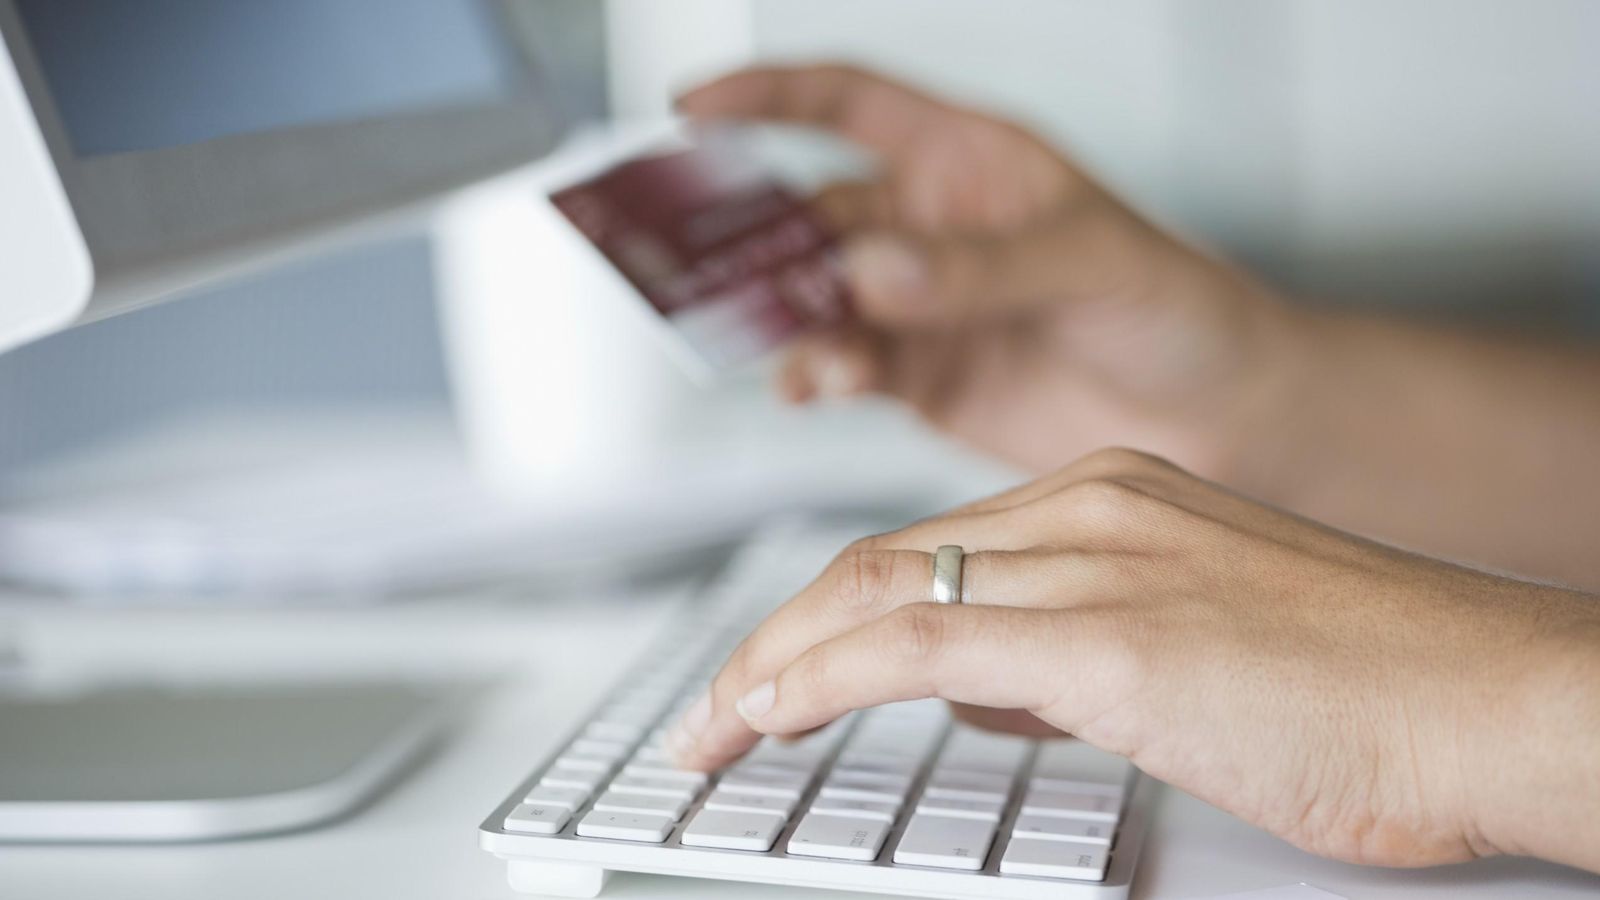 Foto: Una mujer utiliza su tarjeta de crédito para efectuar gestiones bancarias en internet. (Corbis)